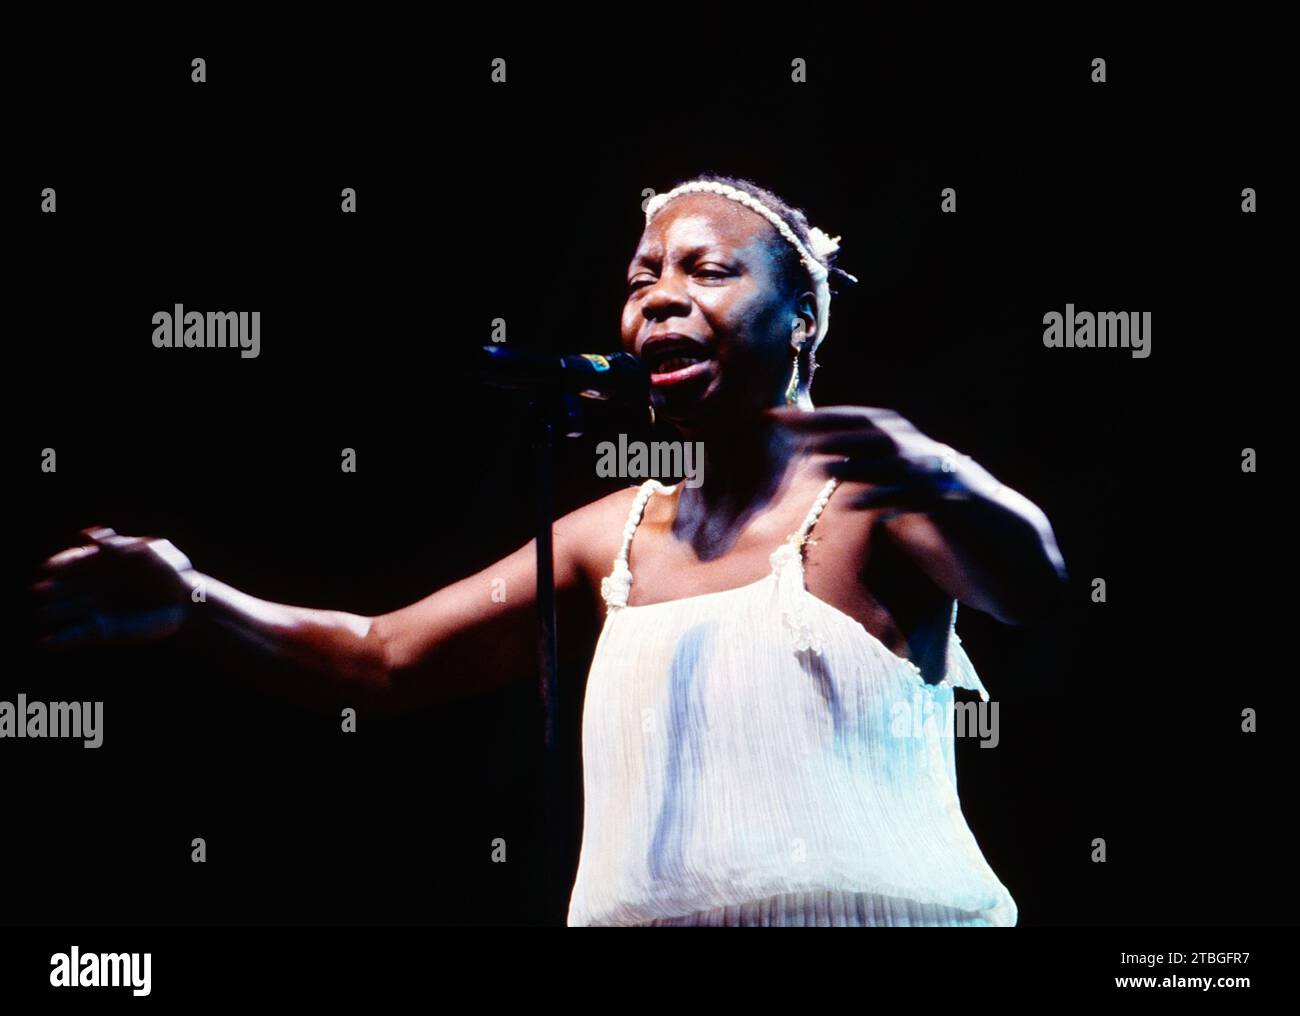 Nina Simone, amerikanische Jazz- und Blues-Sängerin und Jazz Pianistin, Auftritt beim Jazzgipfel in Stuttgart, 1989. Nina Simone, American Jazz and Bues singer and Jazz pianist, Jazzgipfel concert in Stuttgart, 1989. Stock Photo